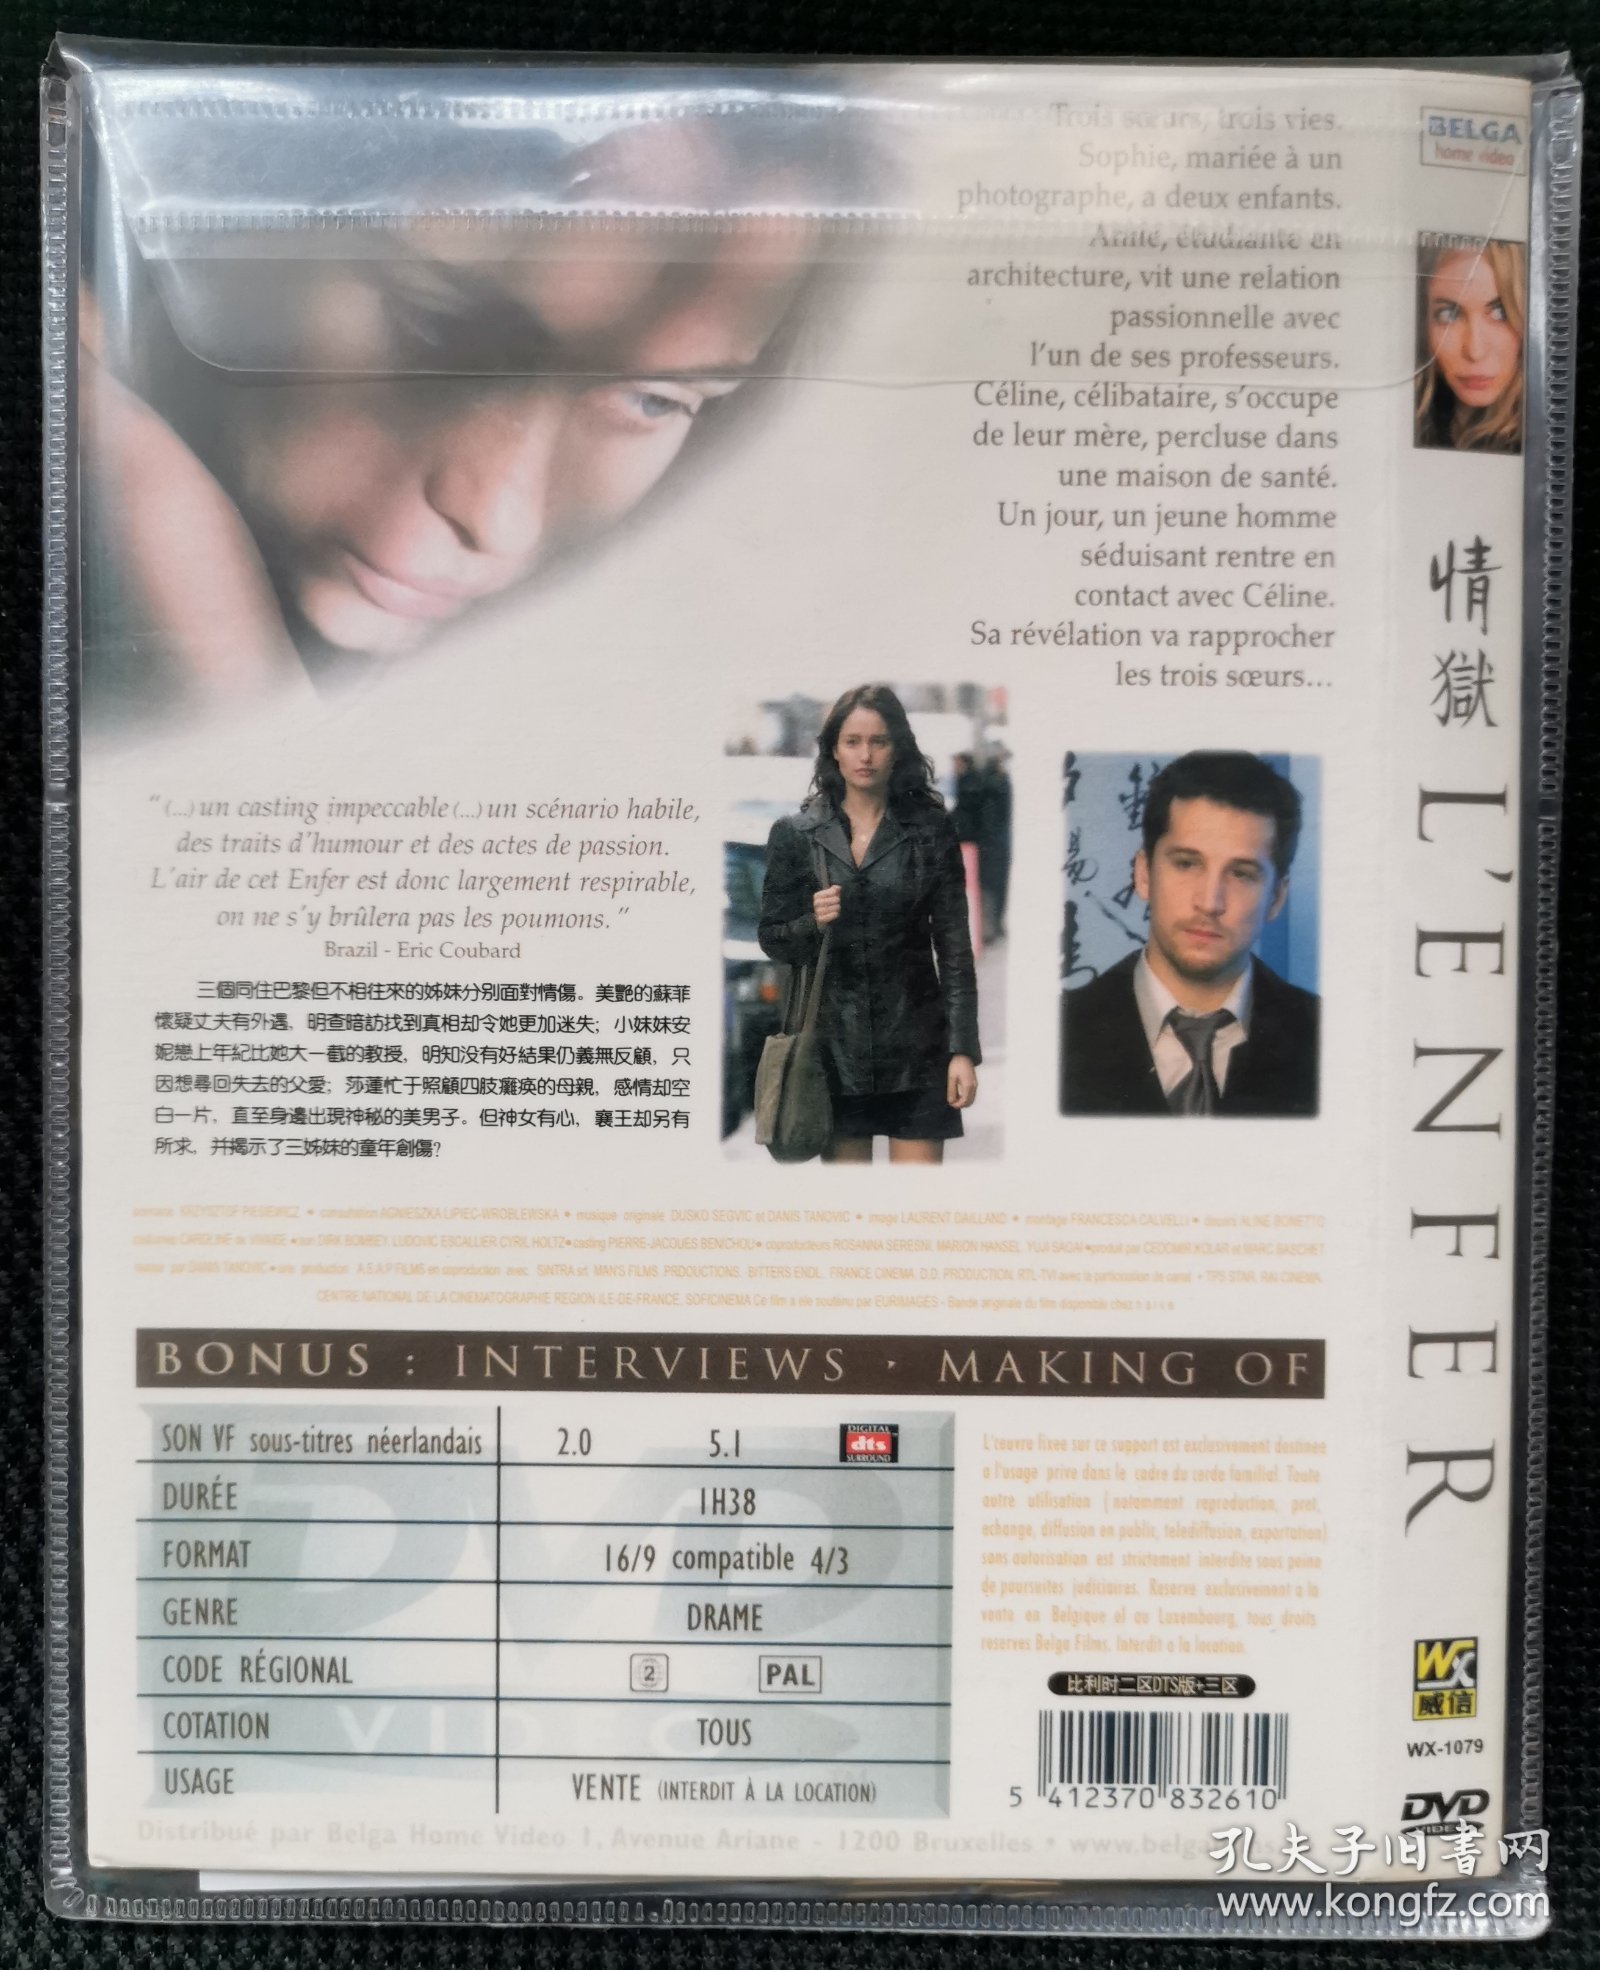 《情狱 L'enfer》DVD9(艾曼纽贝阿/玛丽吉莲)